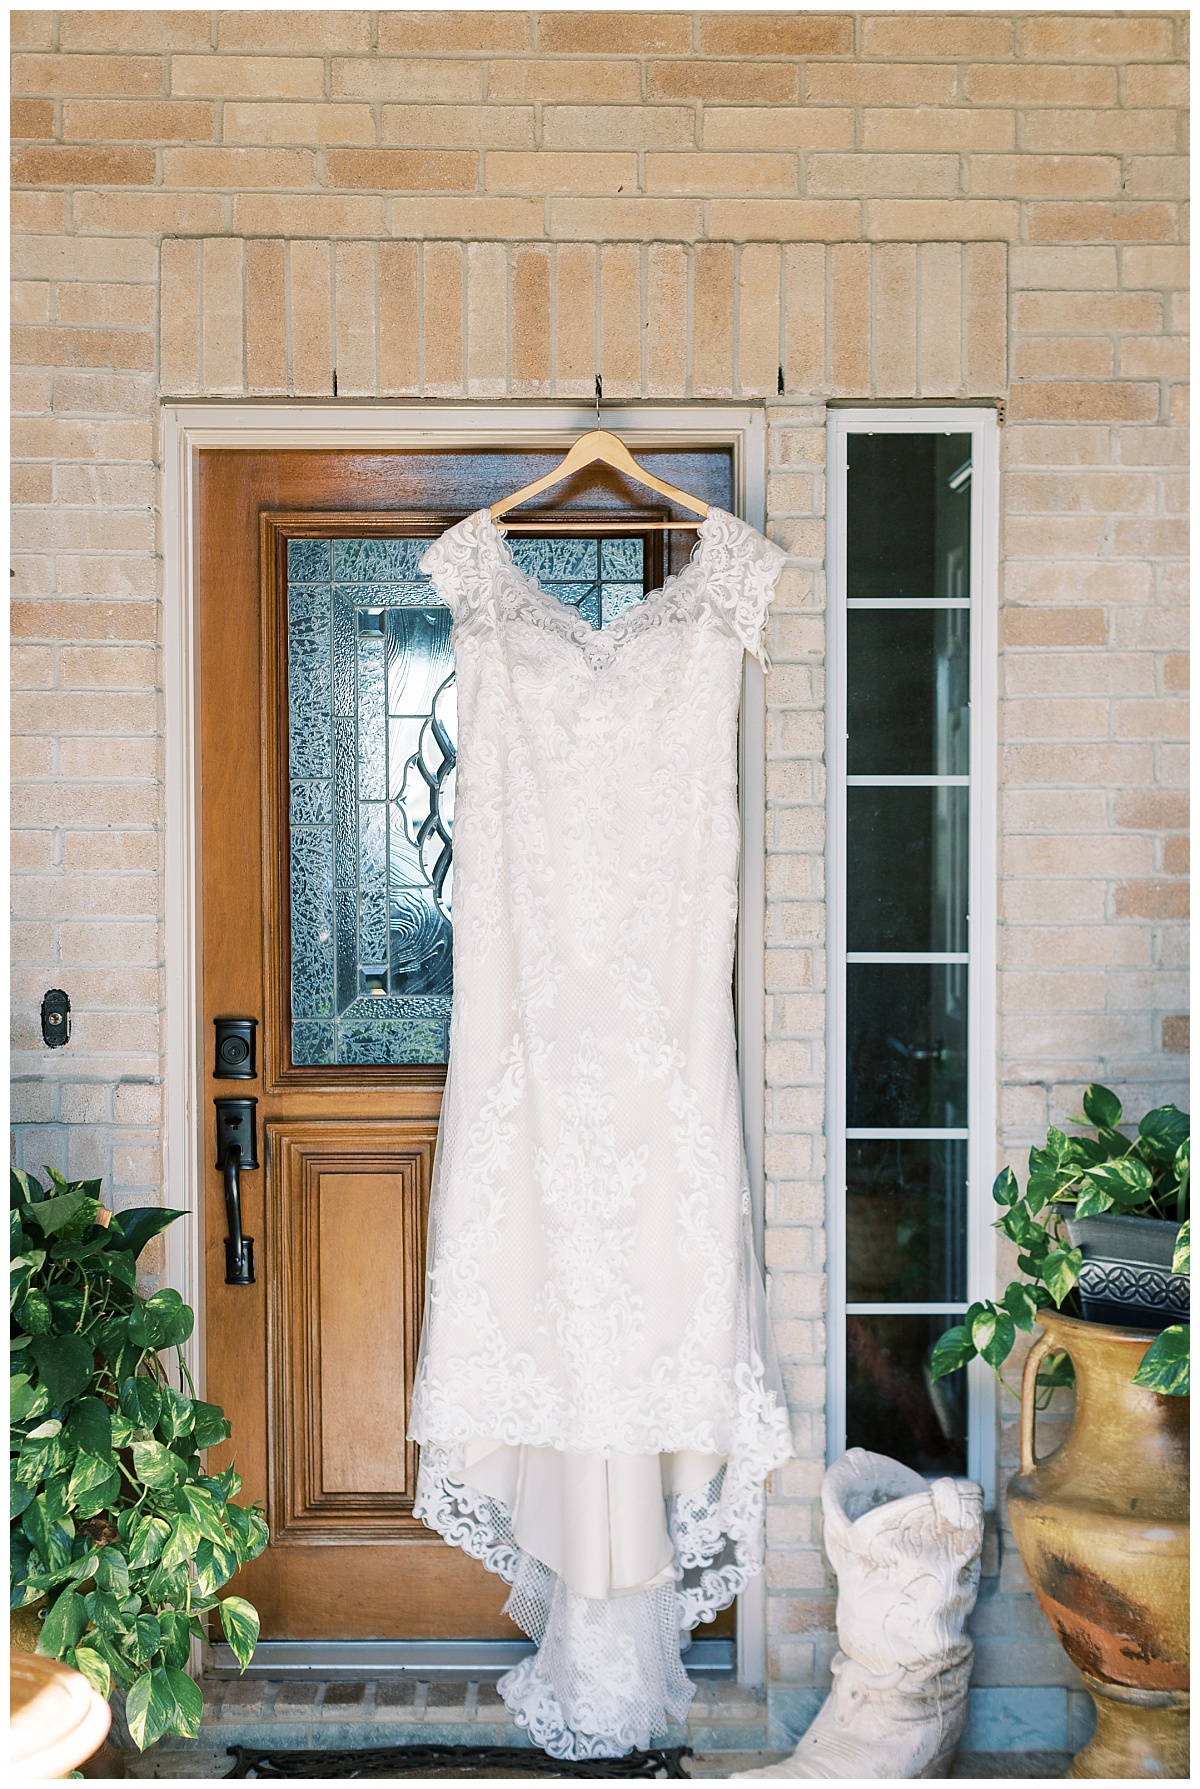 Dress hanging on front door